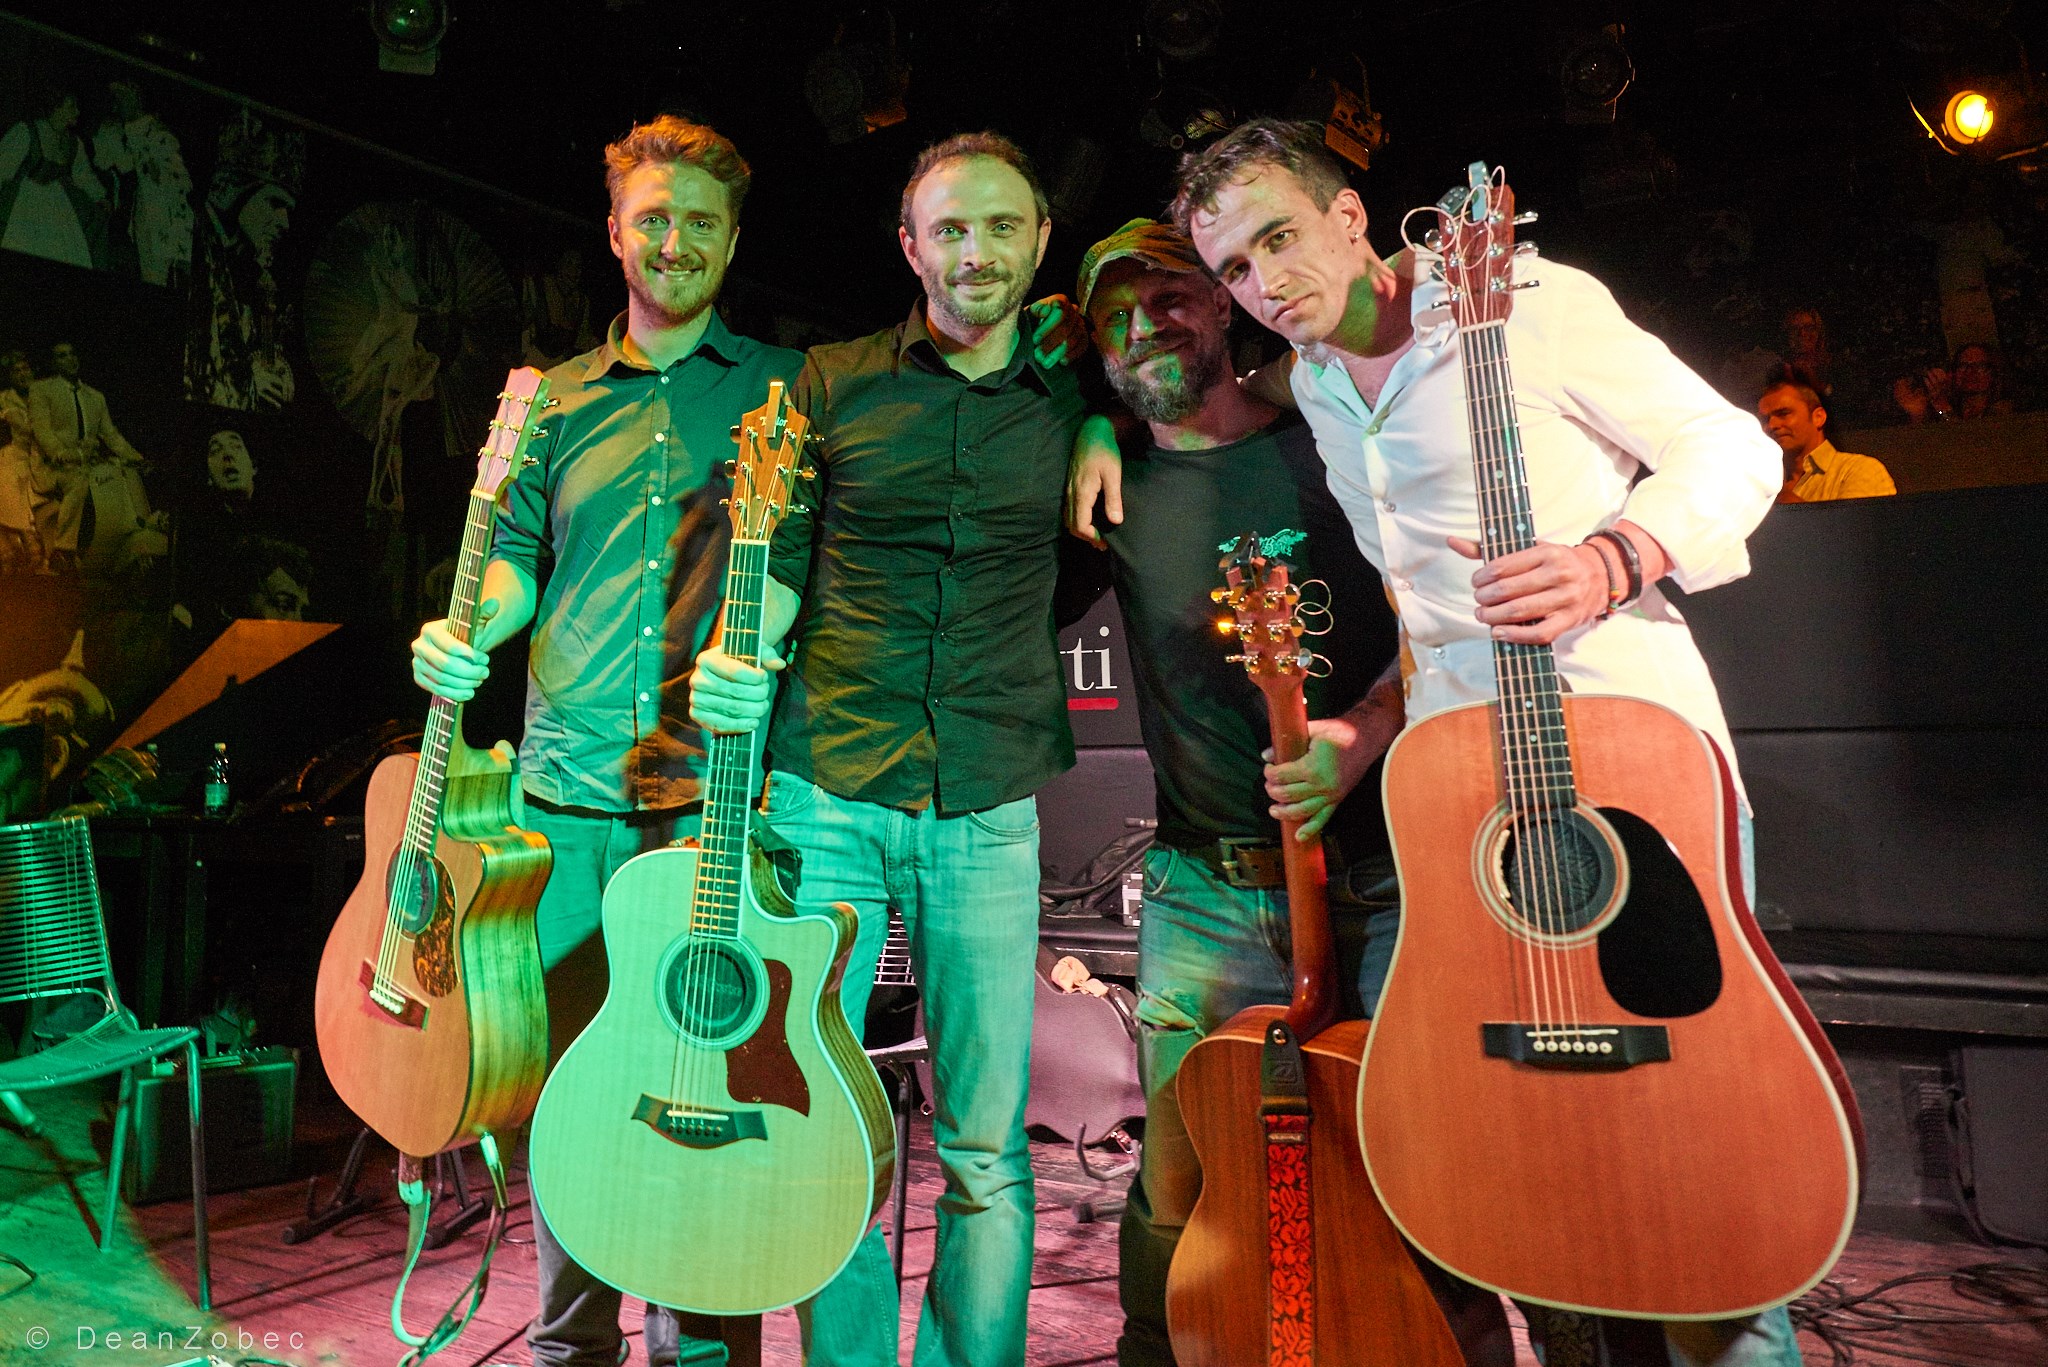 Annuncio “Acoustic guitar night” a Trieste!